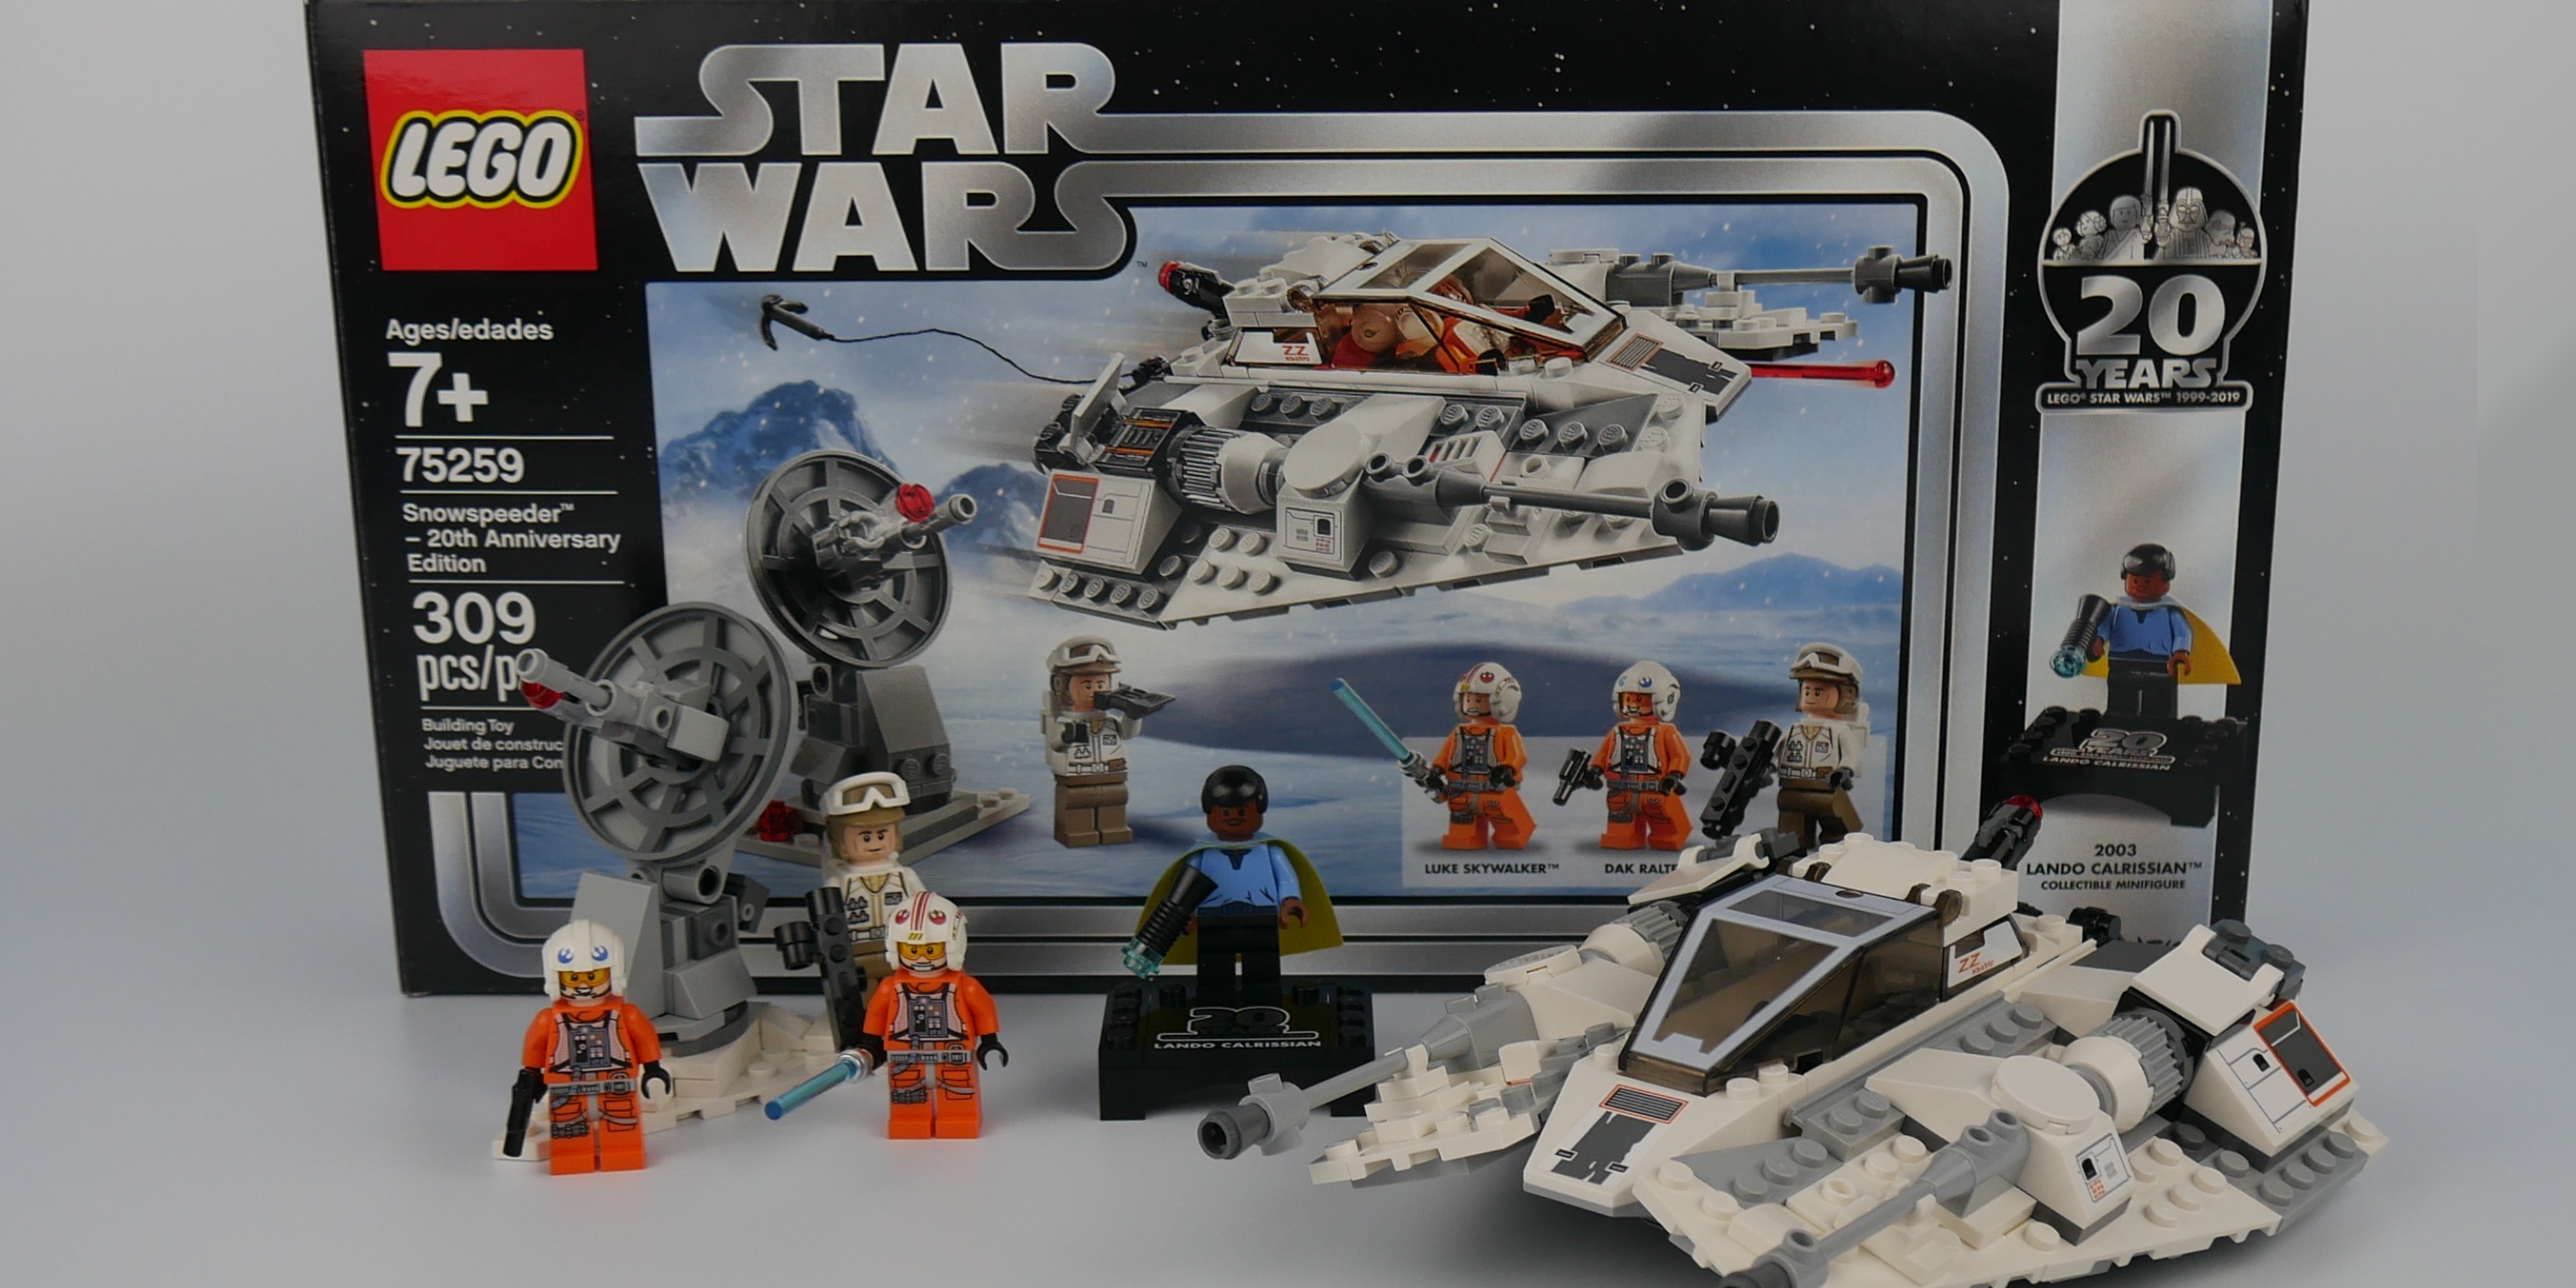 Lego Star Wars Limited Edition Snowspeeder Set 